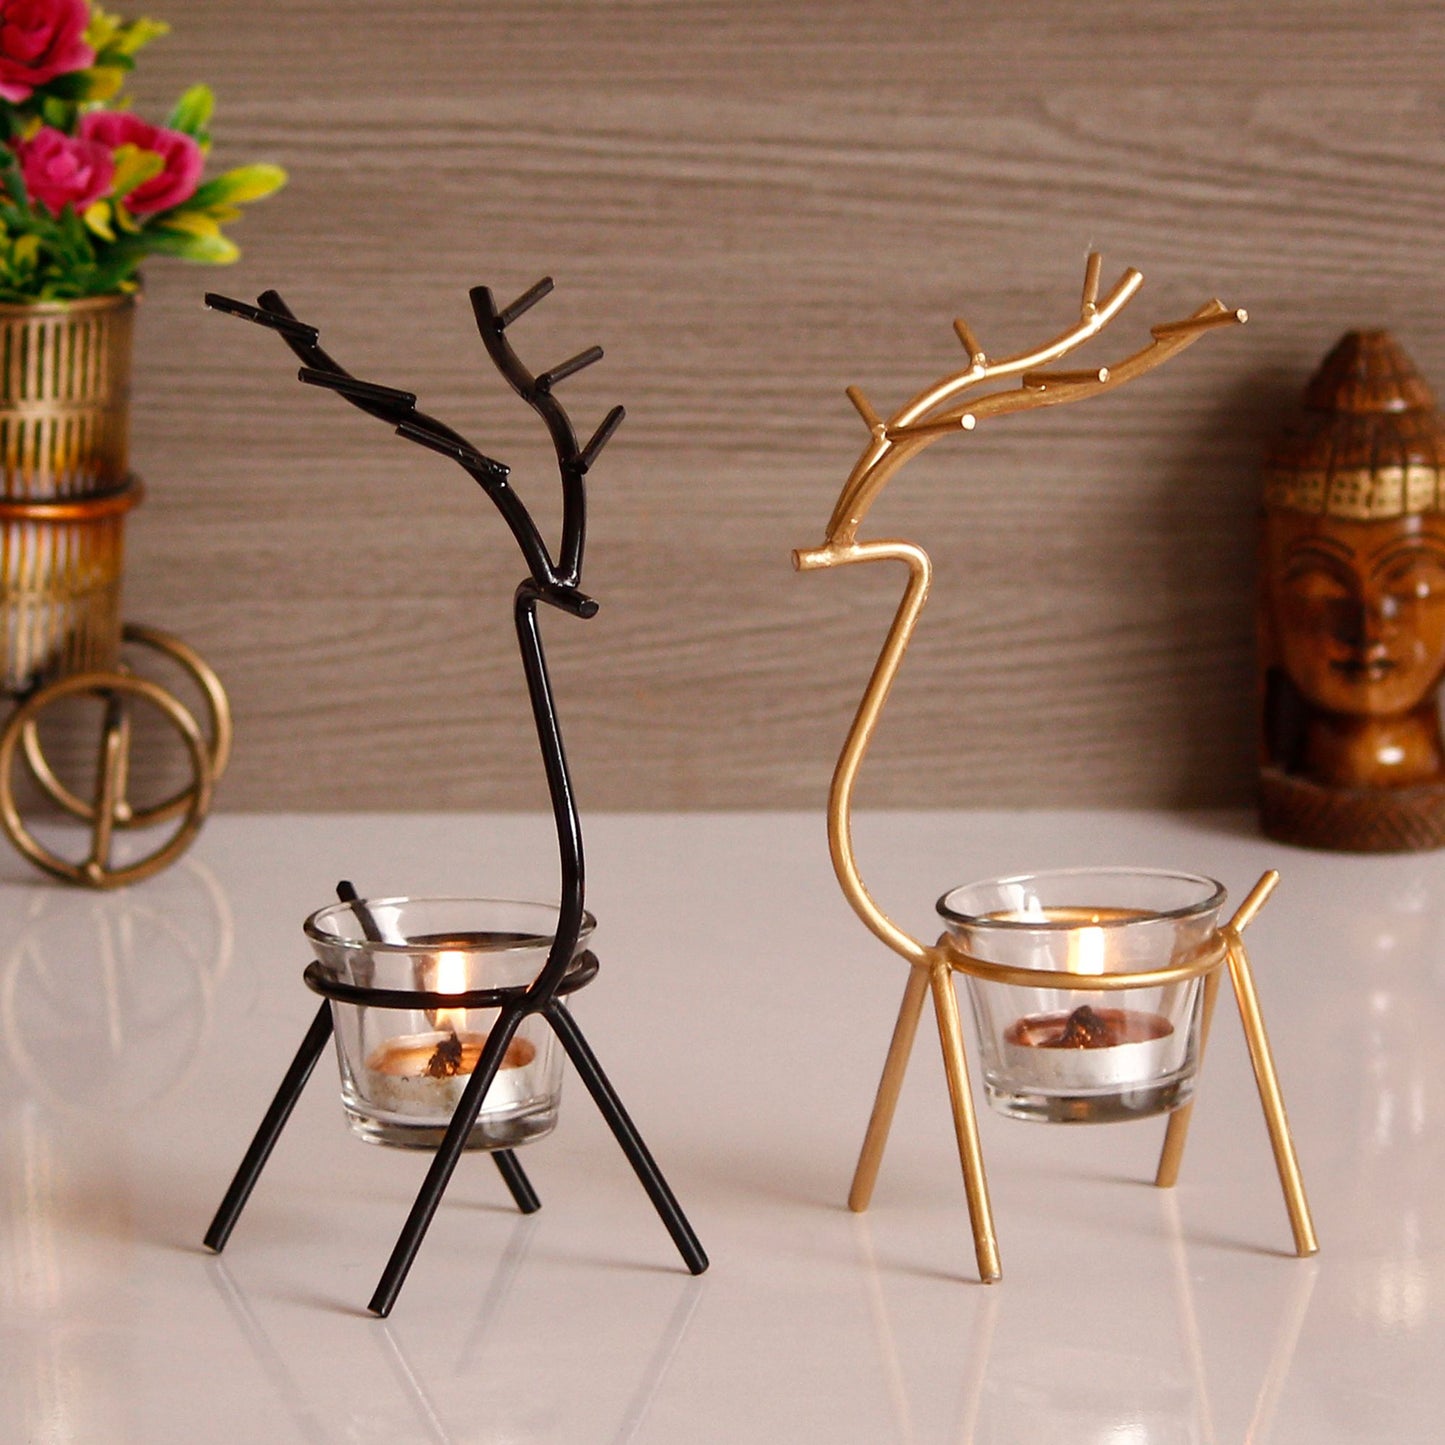 Set of 2 Deer Shape Decorative Handcrafted Metal Tea Light Holder